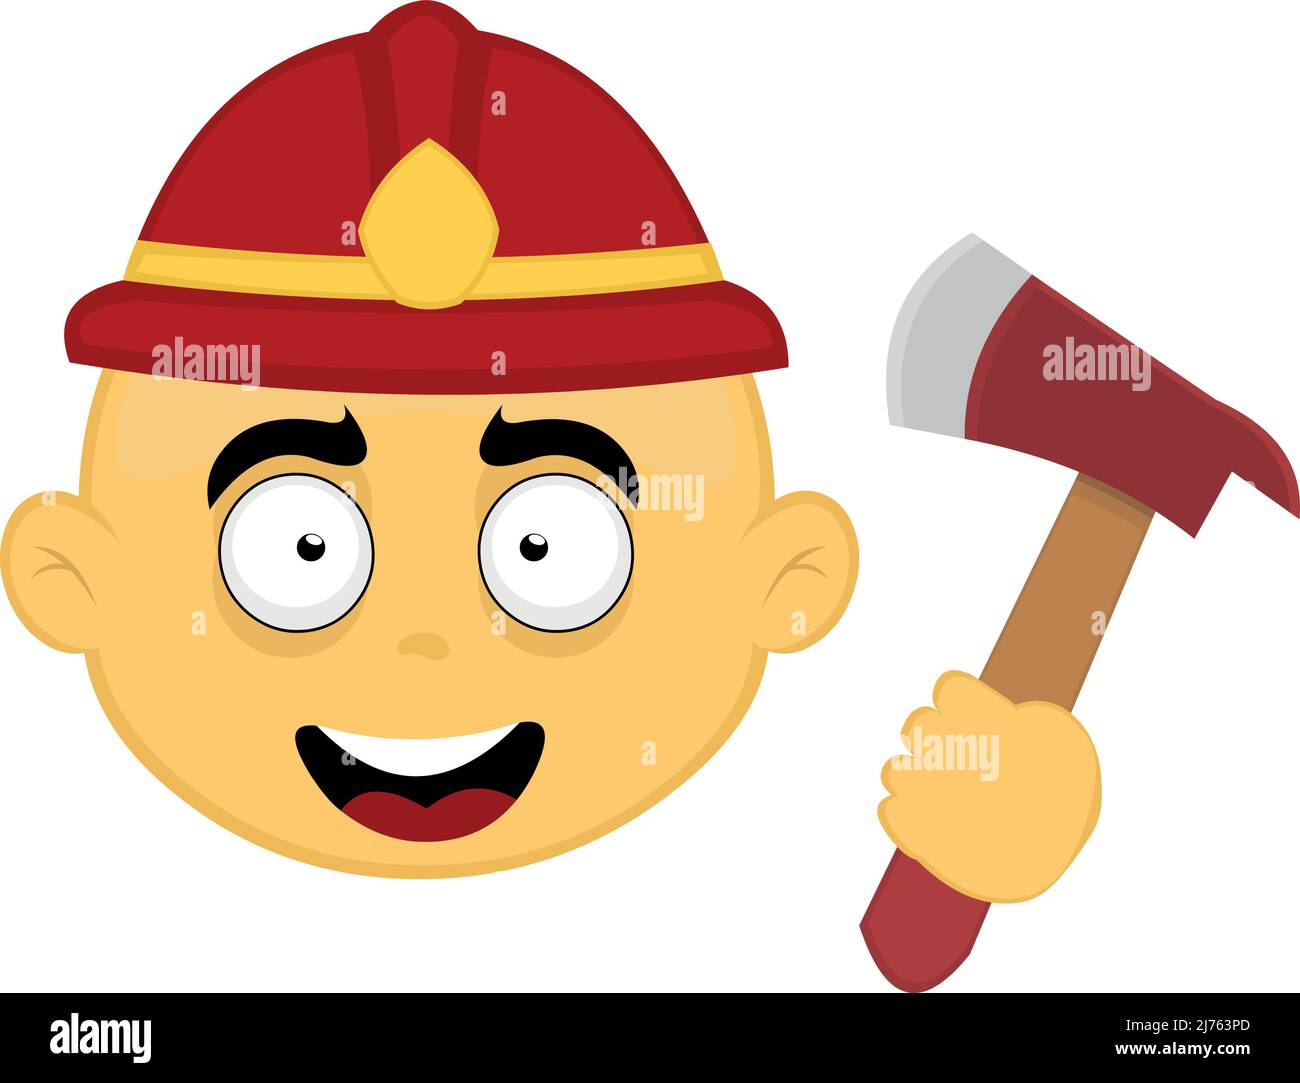 Illustration vectorielle du visage d'un personnage de dessin animé jaune avec un casque de pompier sur sa tête et une hache dans sa main Illustration de Vecteur